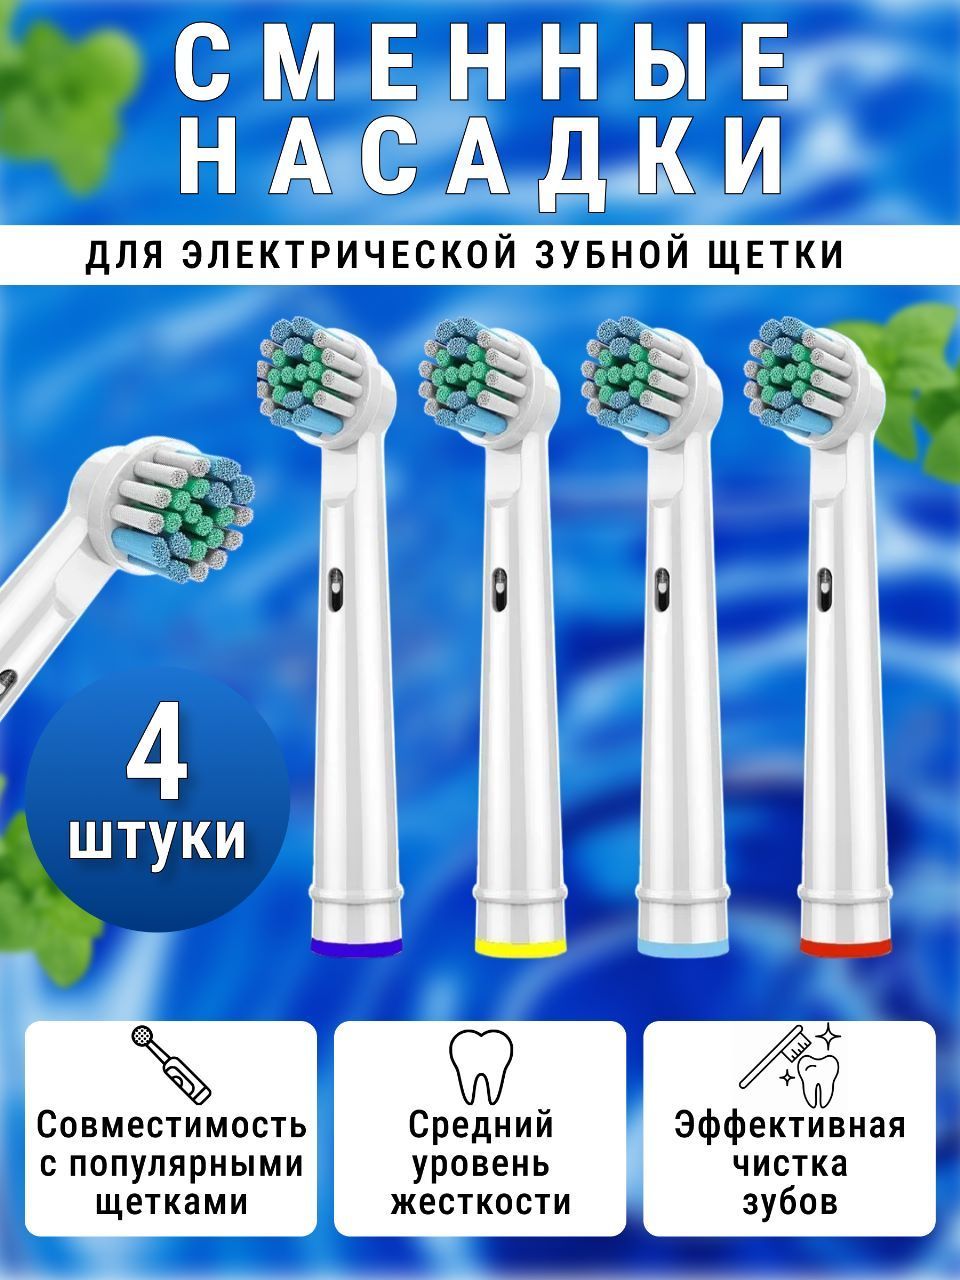 Насадки для электрической зубной щетки 4 шт/ Щетина средней жесткости/ Универсальные сменные насадки для зубной щетки